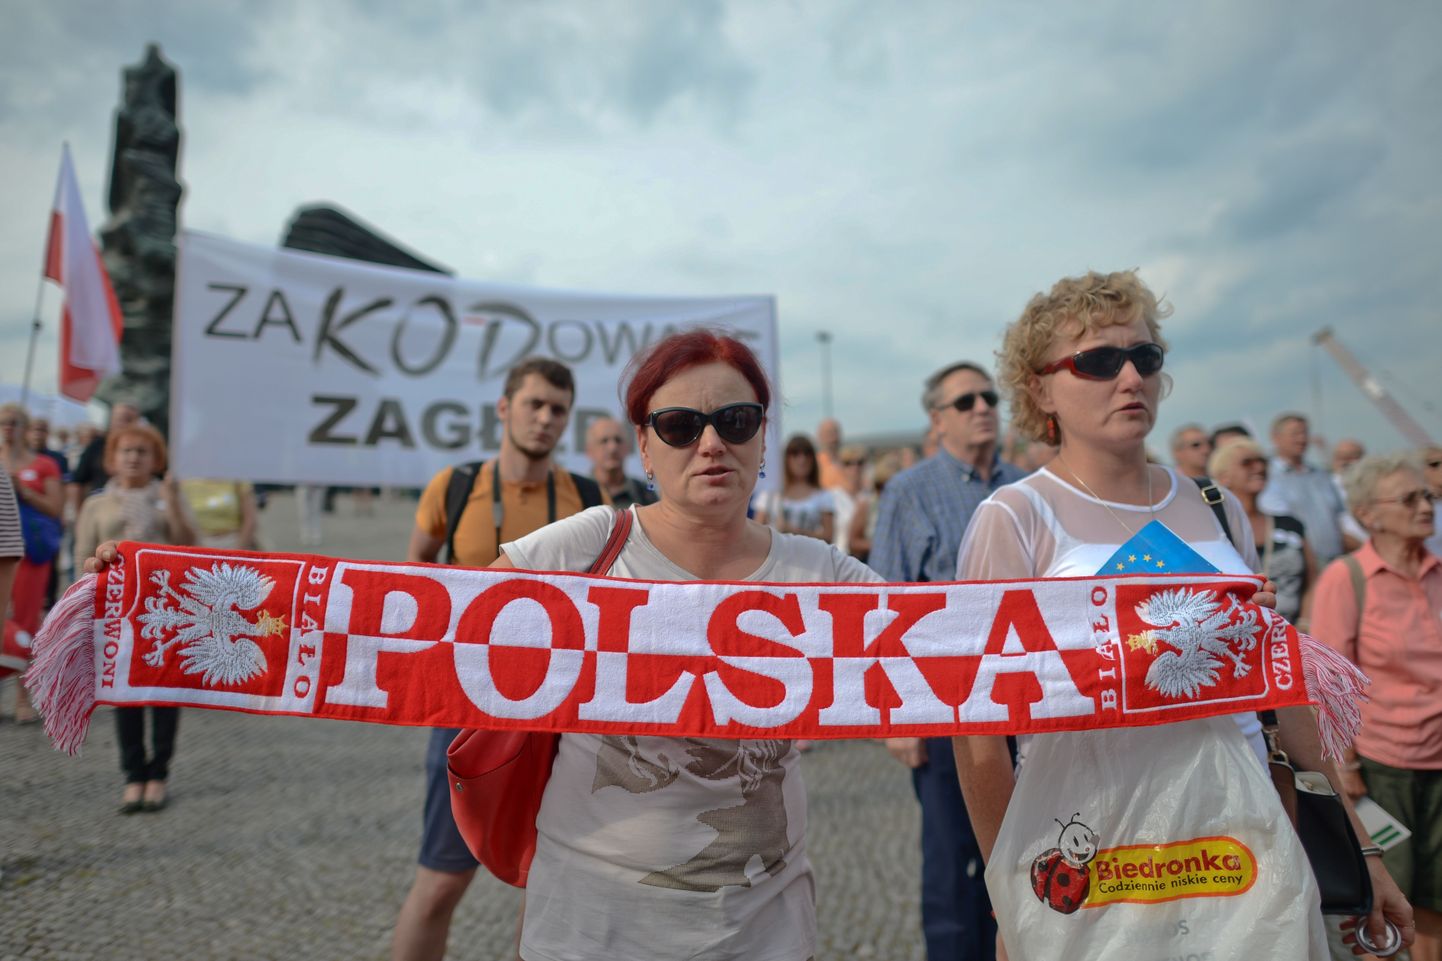 В начале сентября в городе Катовице прошел очередной митинг против правительства «Права и справедливости», организованный Комитетом защиты демократии (KOD).